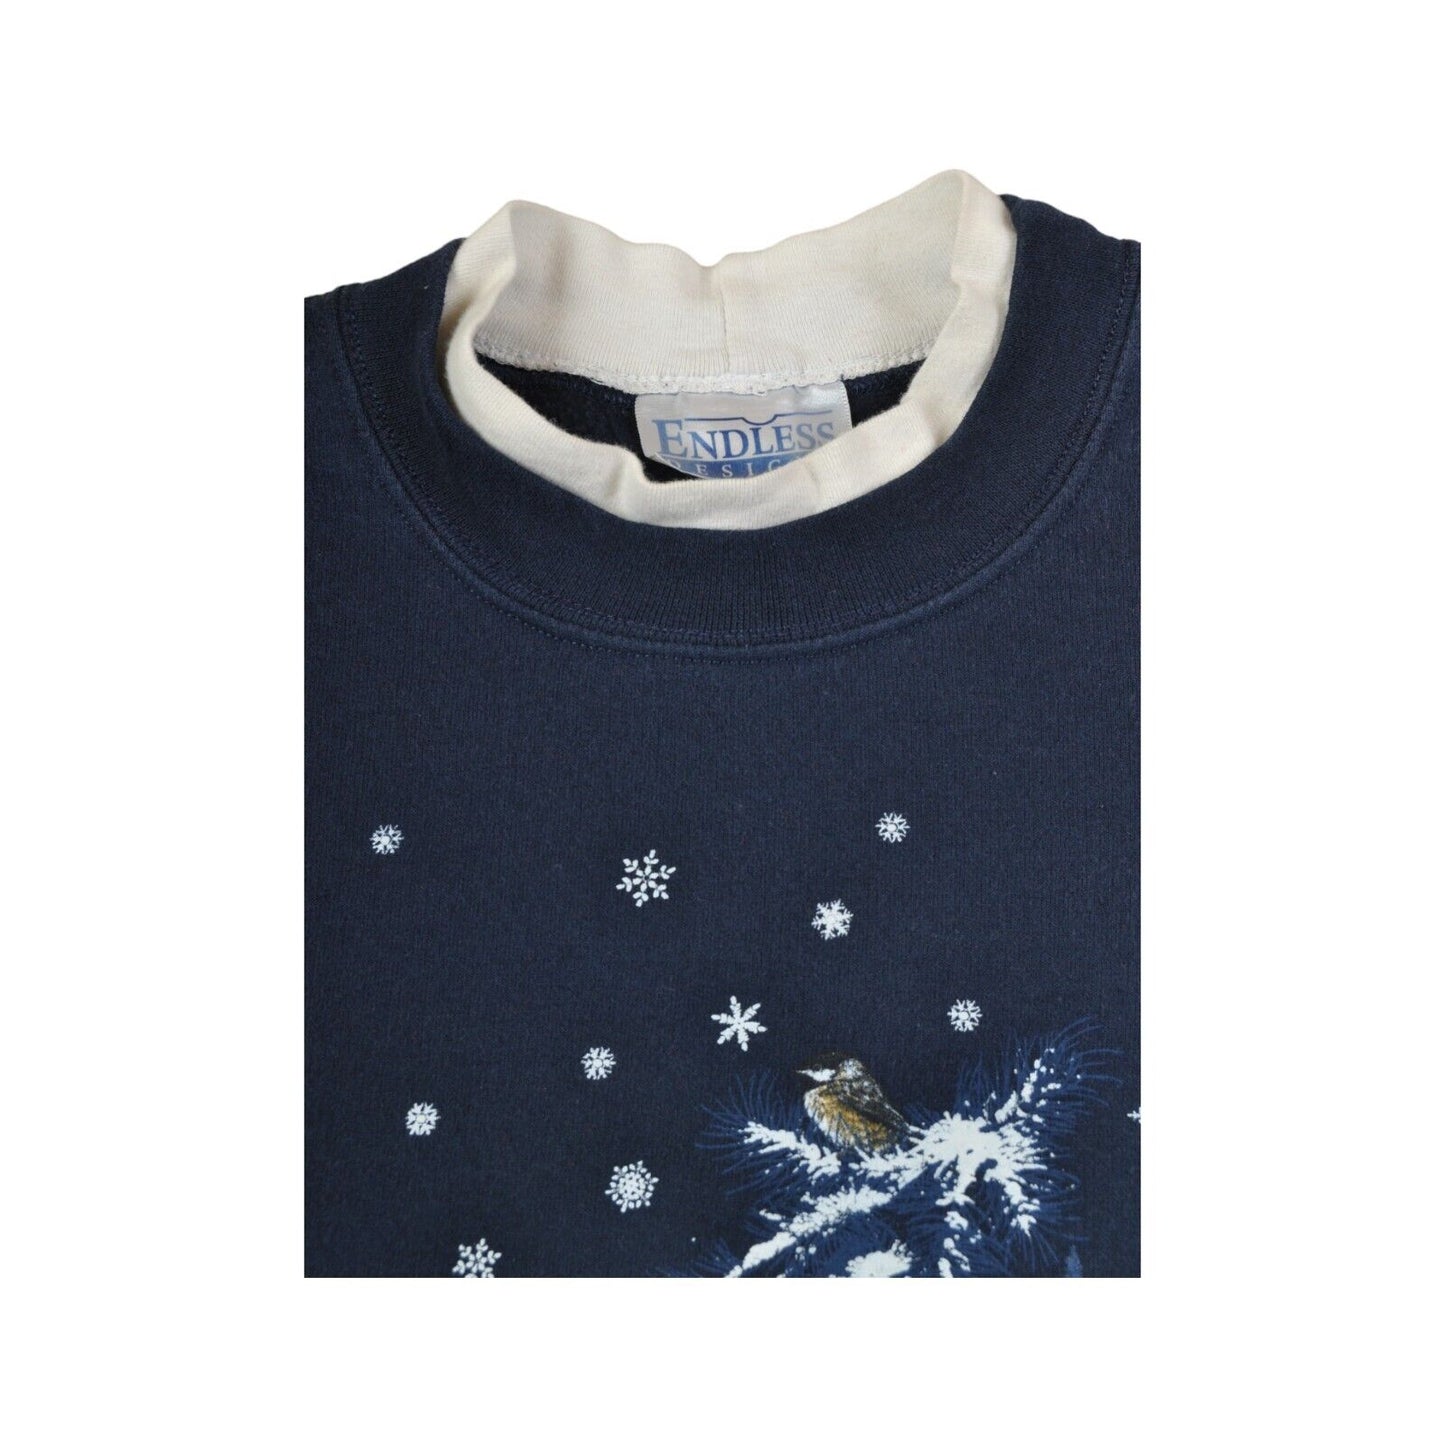 Vintage Christmas Sweatshirt Snowing Bird Print Navy Ladies Large